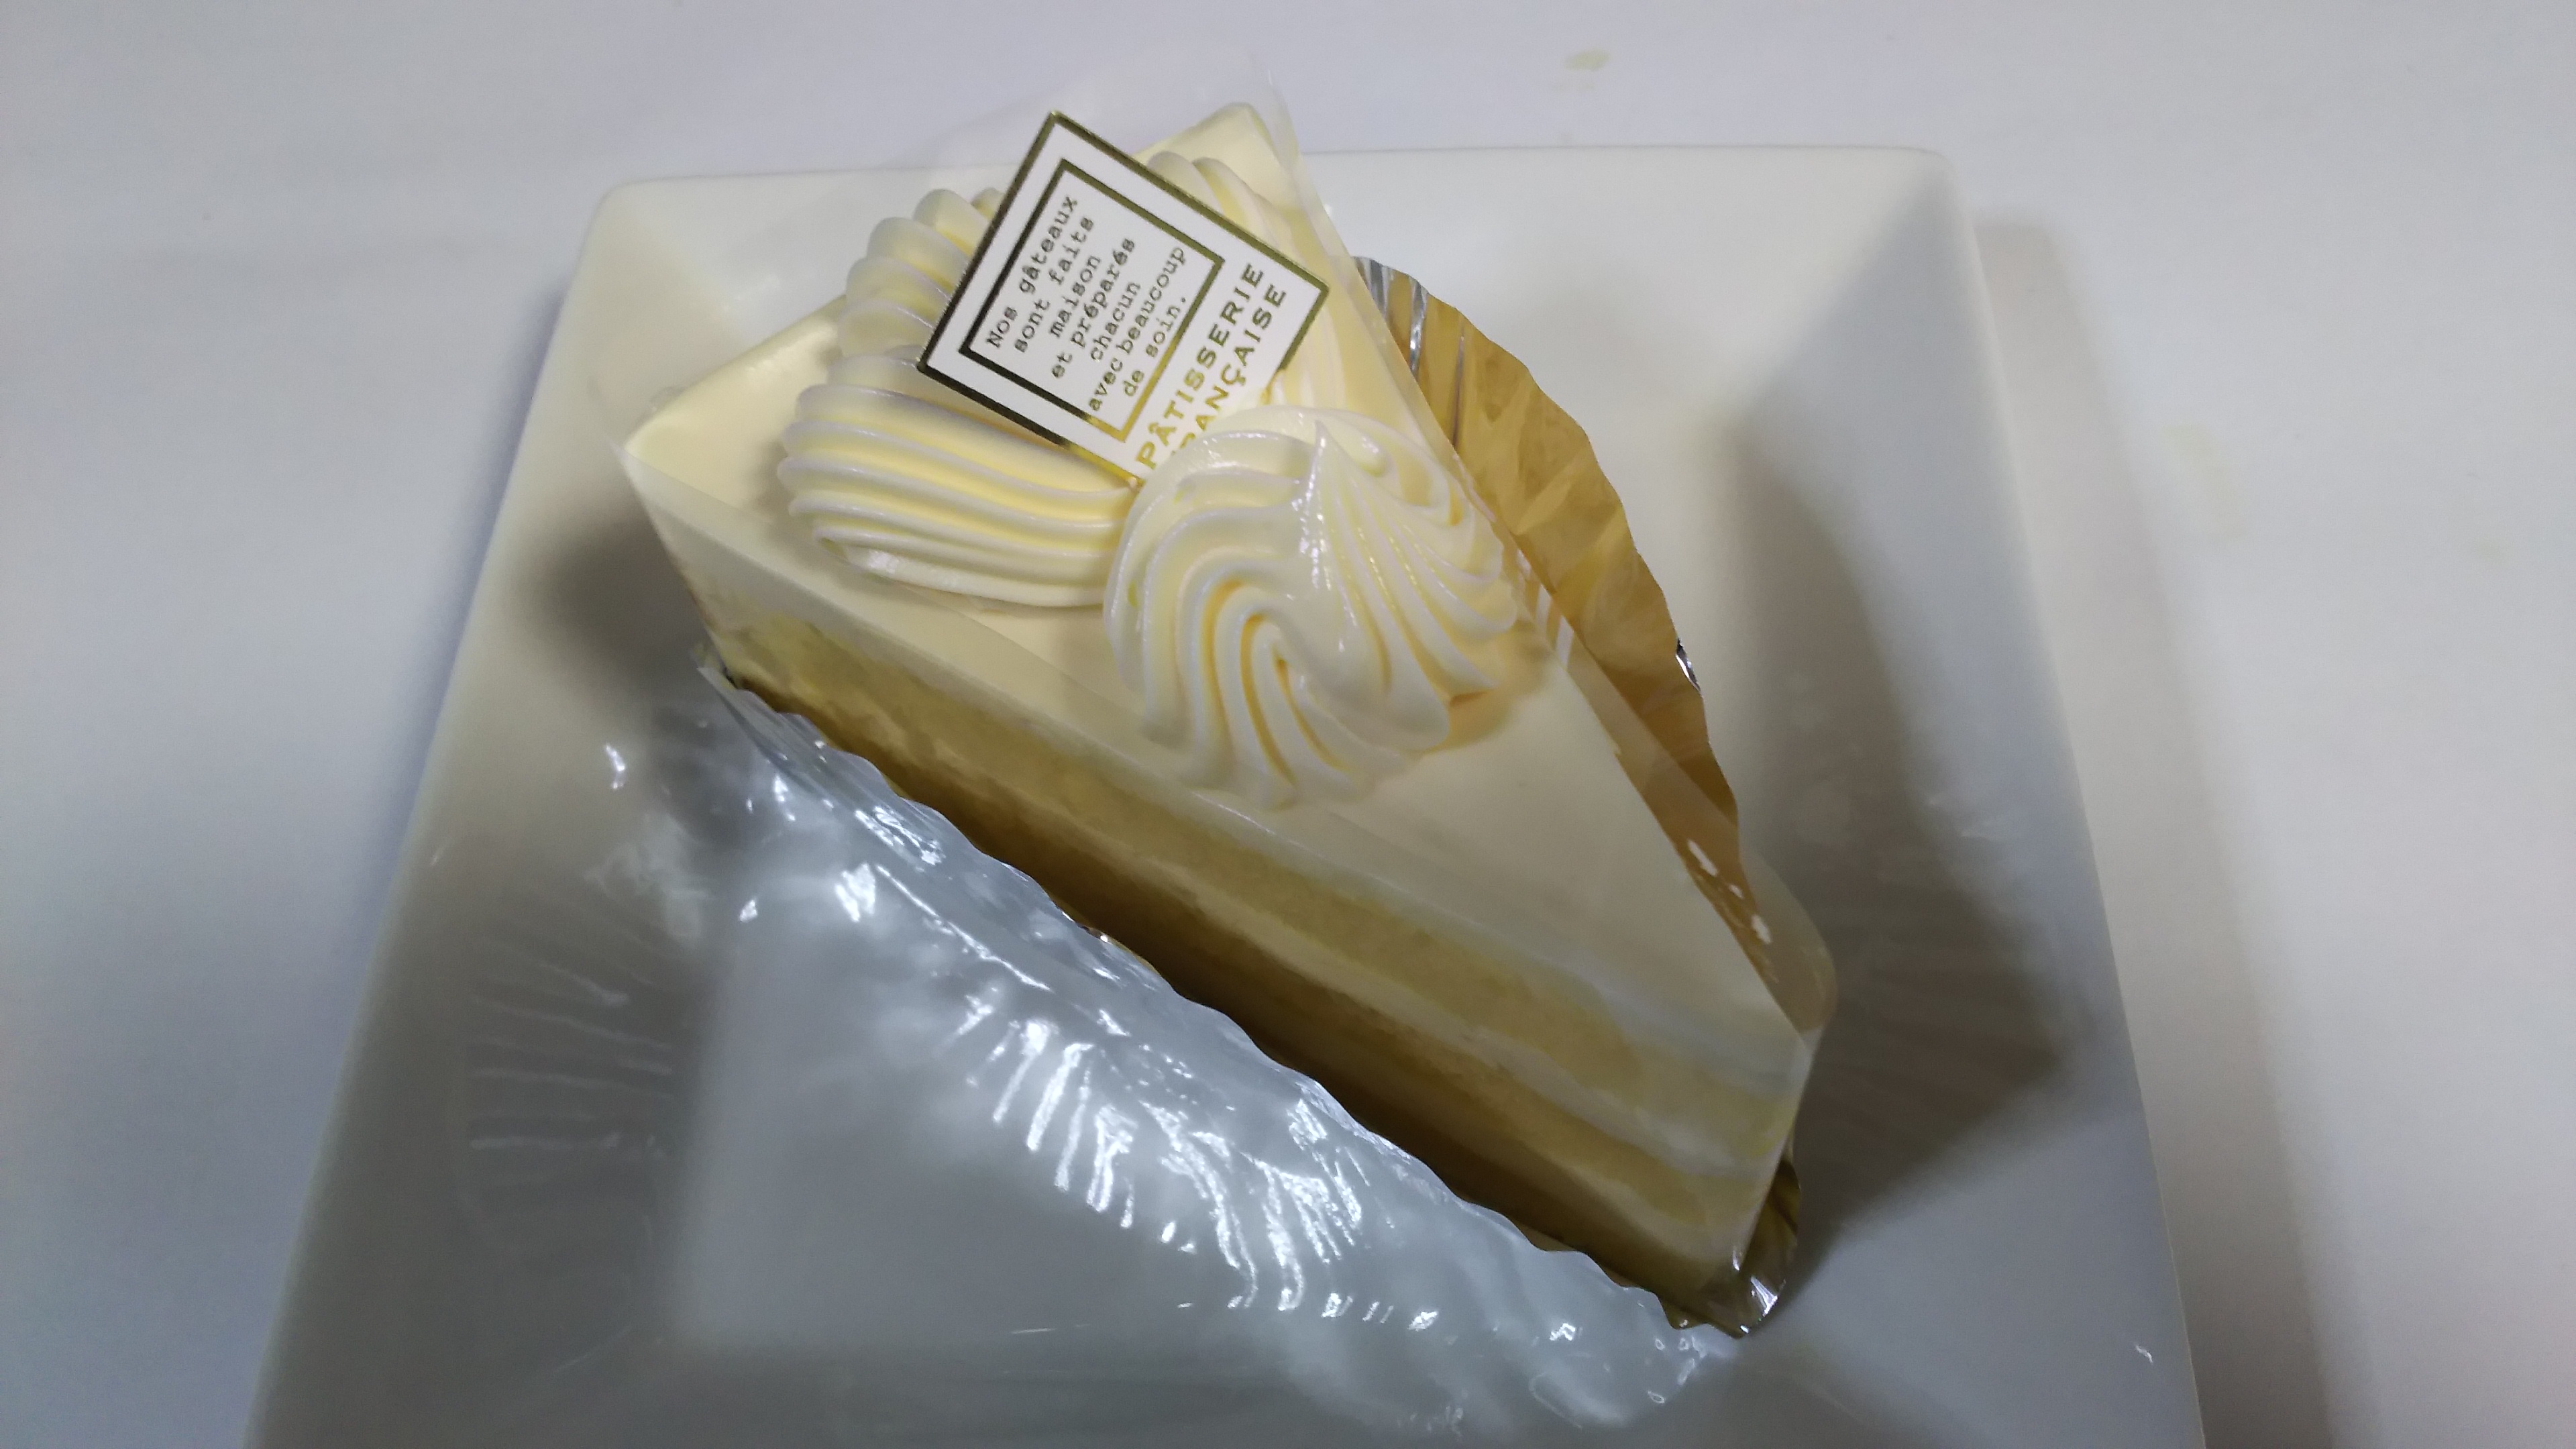 インセンティブ ピル 尊敬 美味しい バター クリーム ケーキ Hang8 Jp